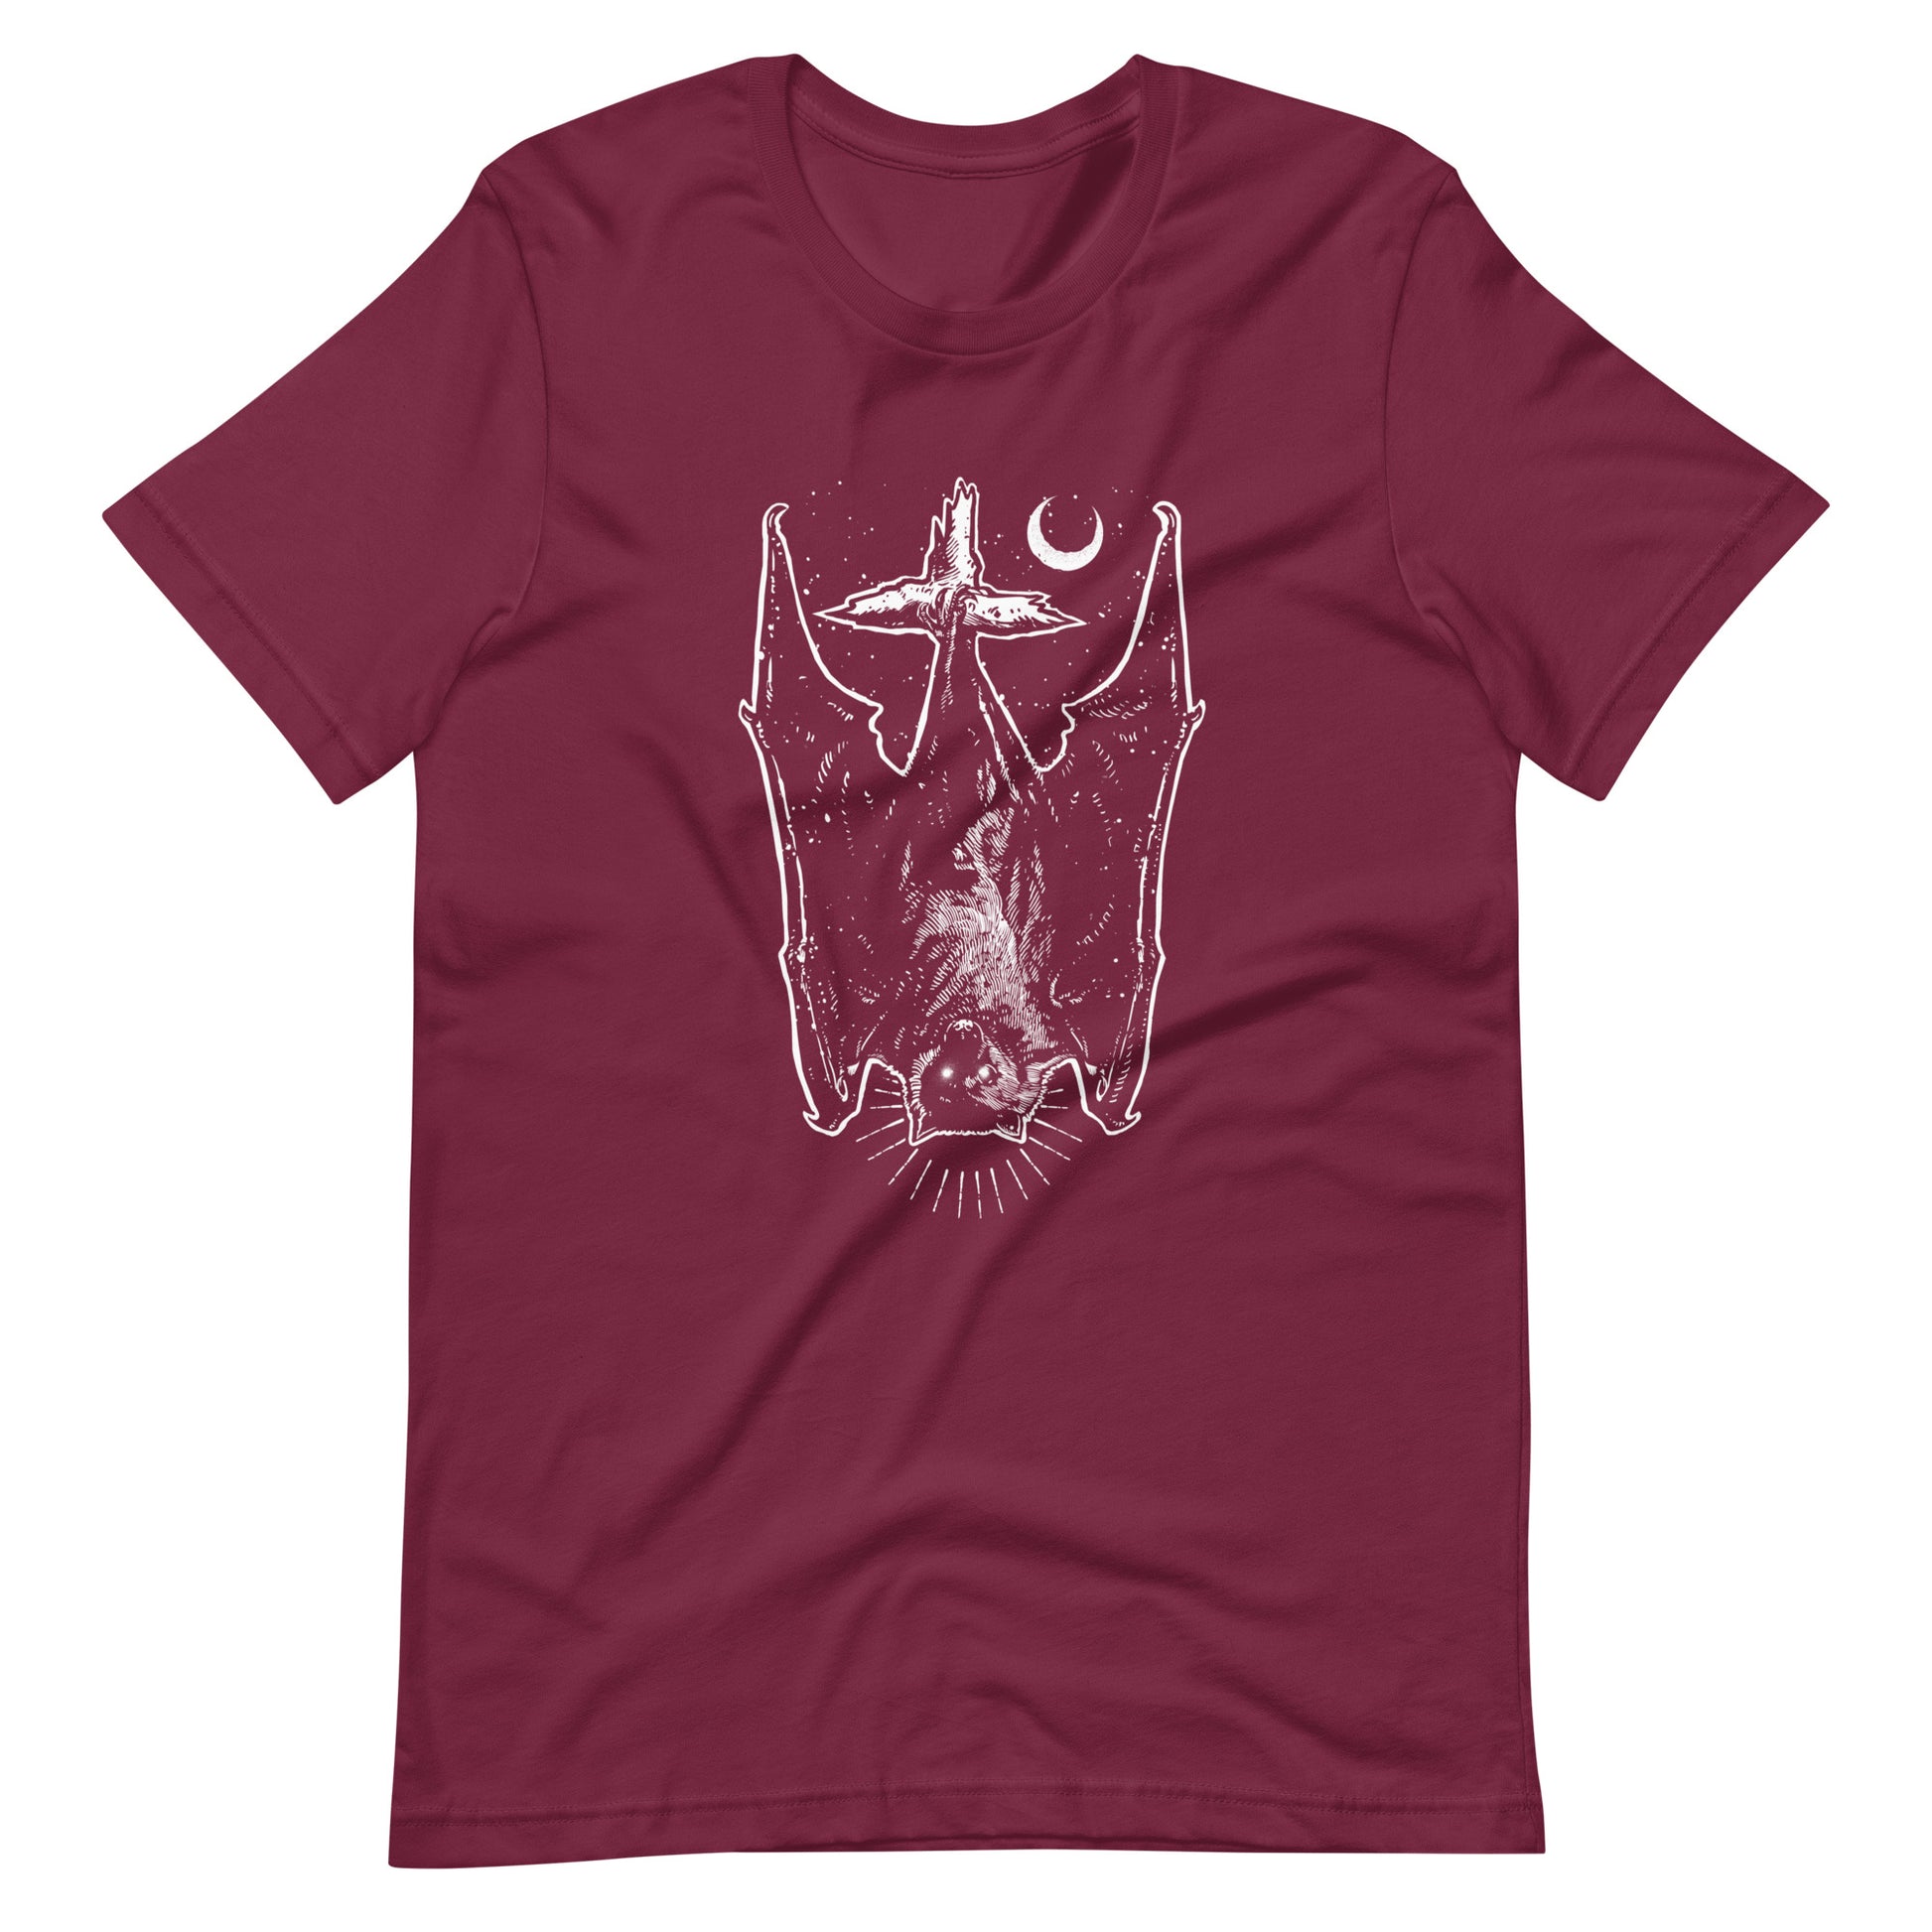 Bat - Men's t-shirt - Maroon Front